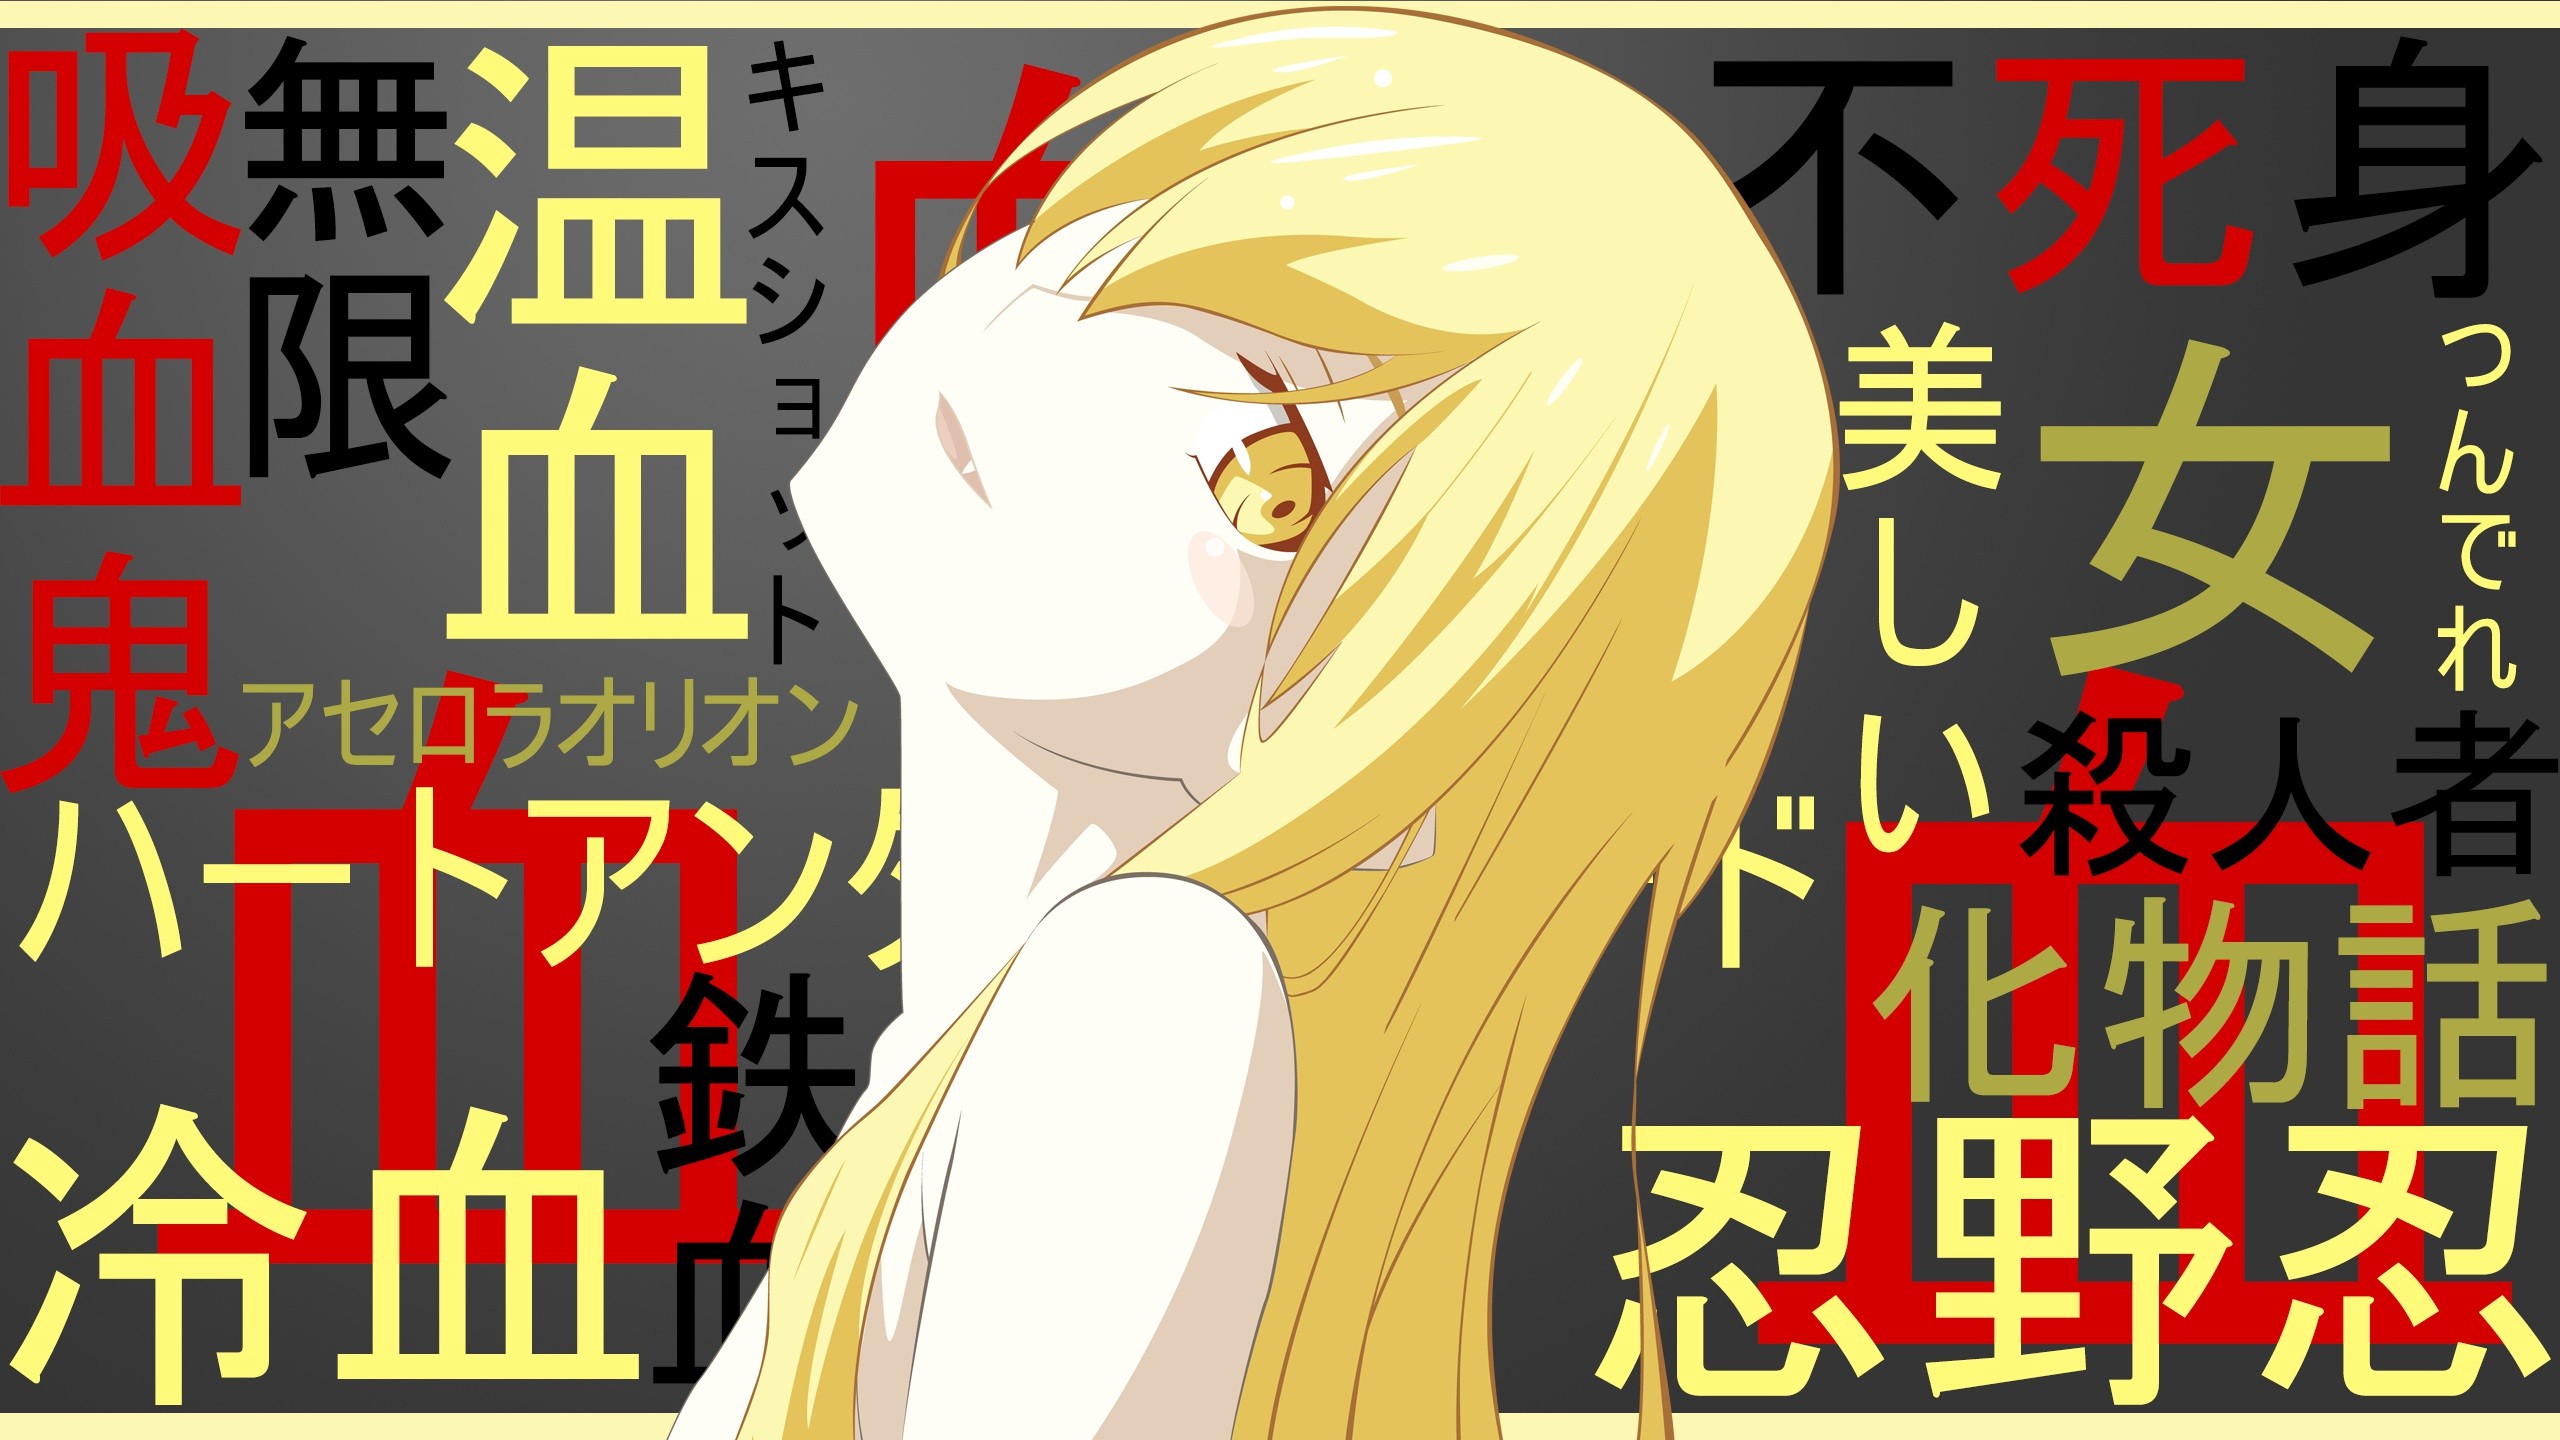 Oshino Shinobu Monogatari Series Anime Girls Vampires Blonde Anime Artwork Anime Vectors Manga Typog 2560x1440